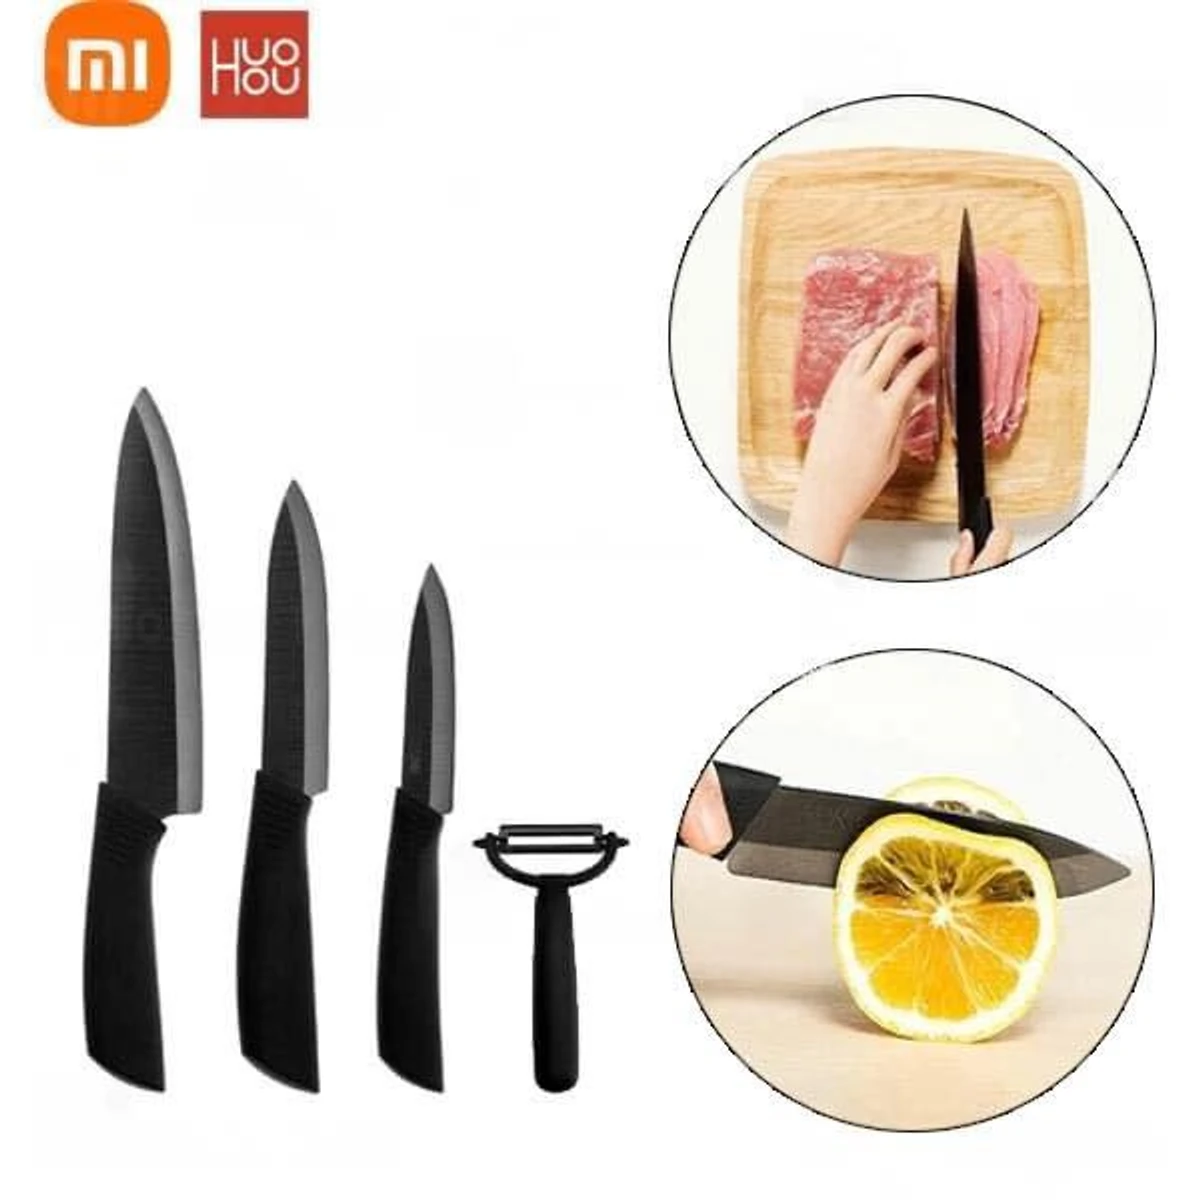 Xiaomi Mijia Huohou Kitchen Knife Set 4 Pcs